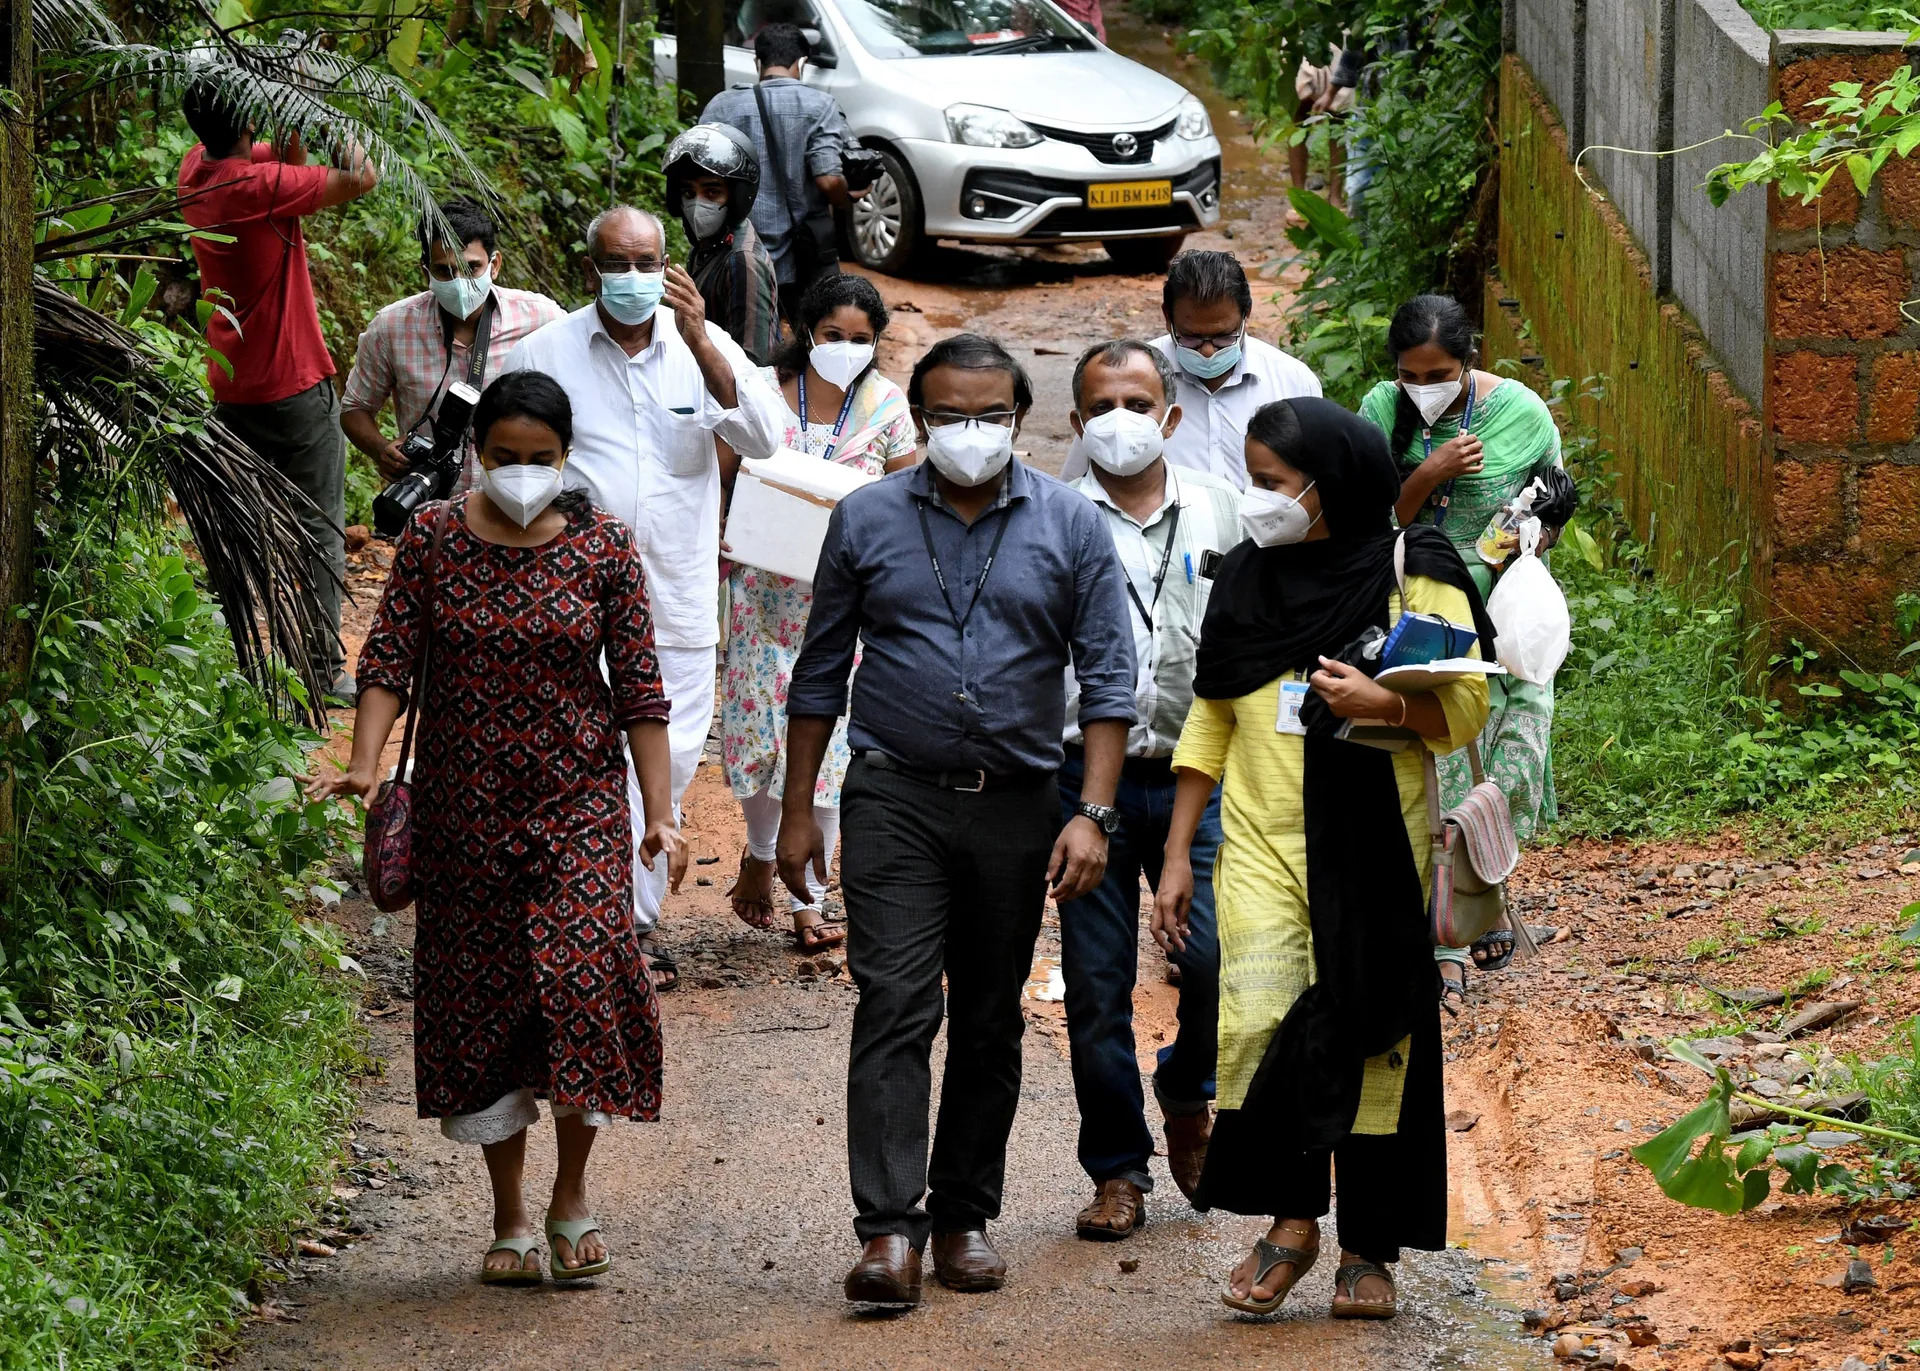 De autoriteiten laten in het district Kozhikode fruit onderzoeken op mogelijke besmetting met het Nipah-virus, zoals hier in het dorp Maruthonkara. Foto Reuters Dorpen afgesloten